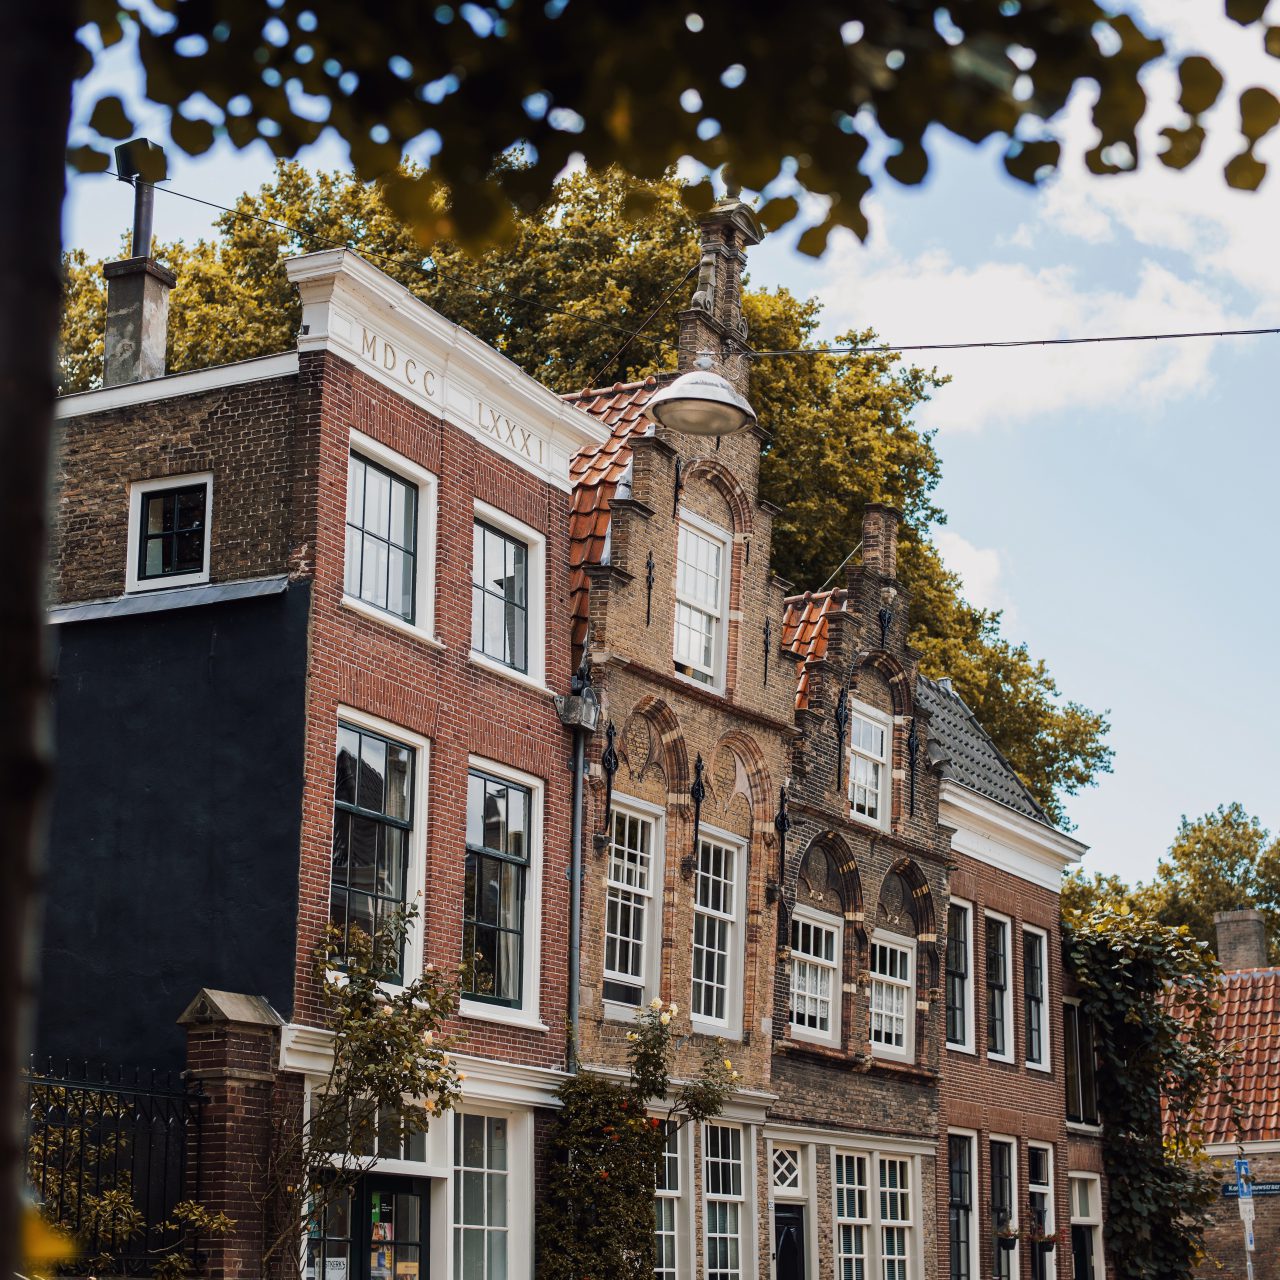 Museumstraat Dordrecht met historische woonhuizen.